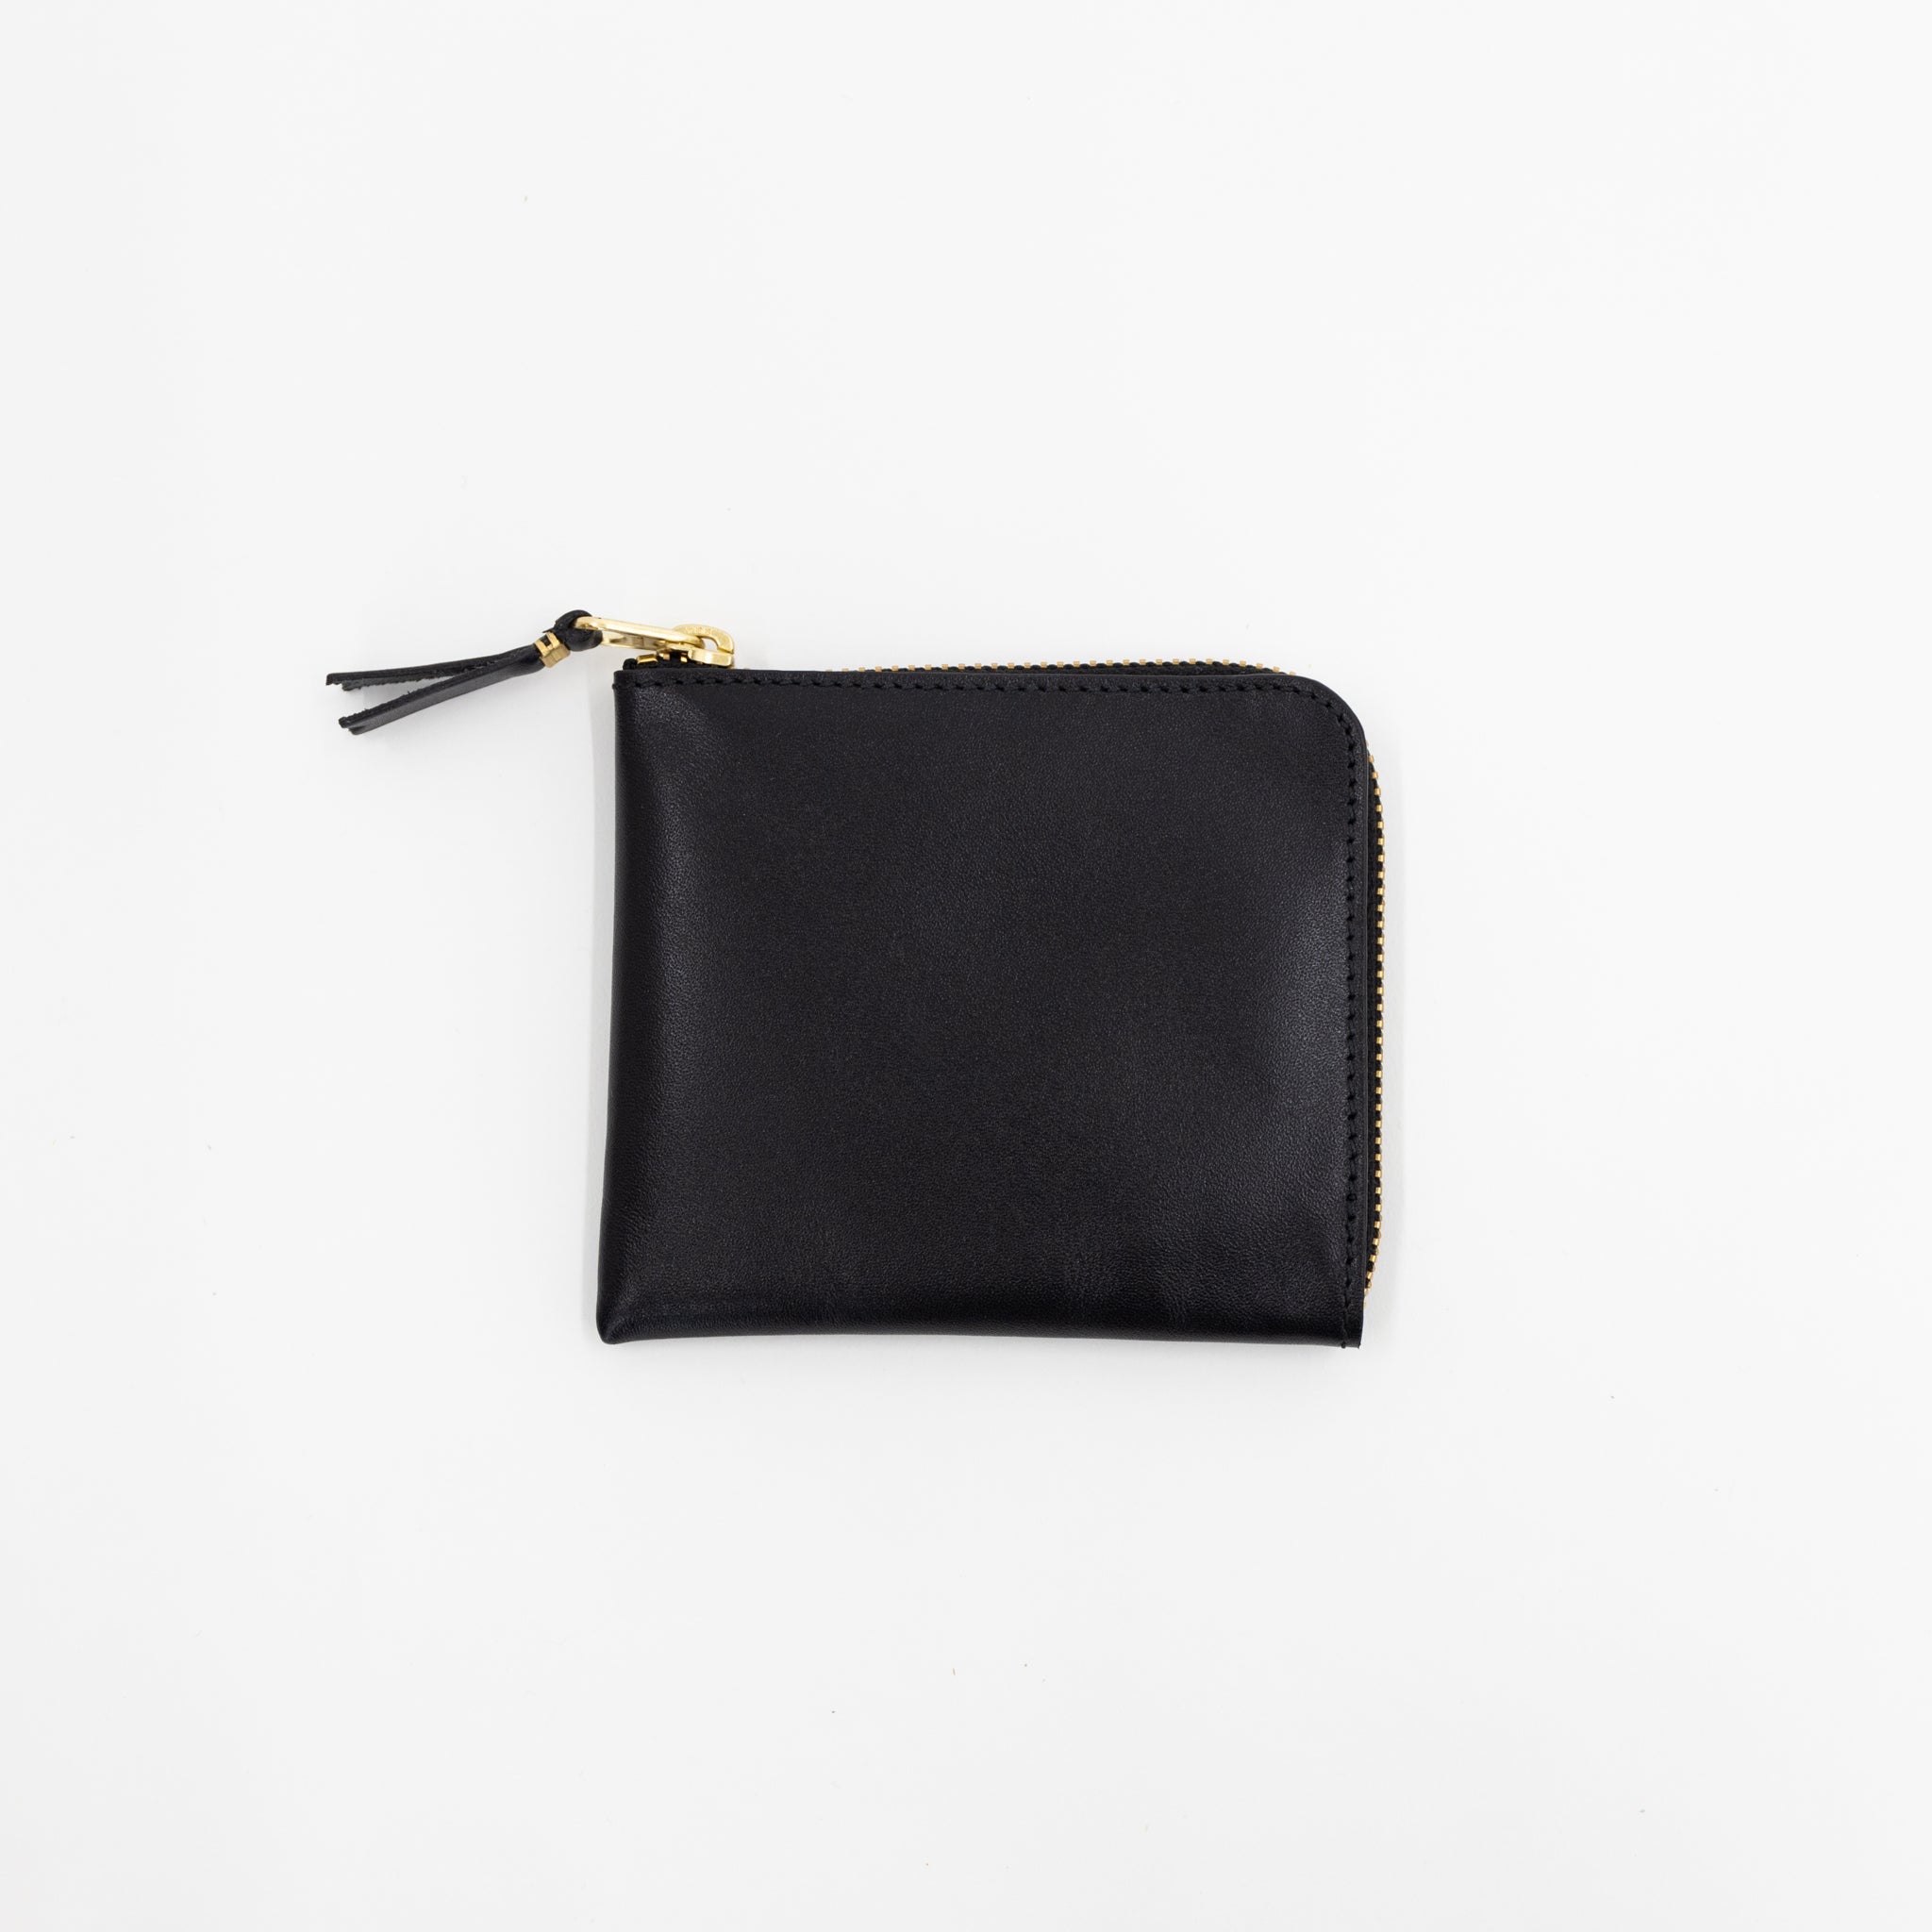 Comme des Garcons Wallet Classic Line Wallet Unisex Black in Leather - Size: Uni